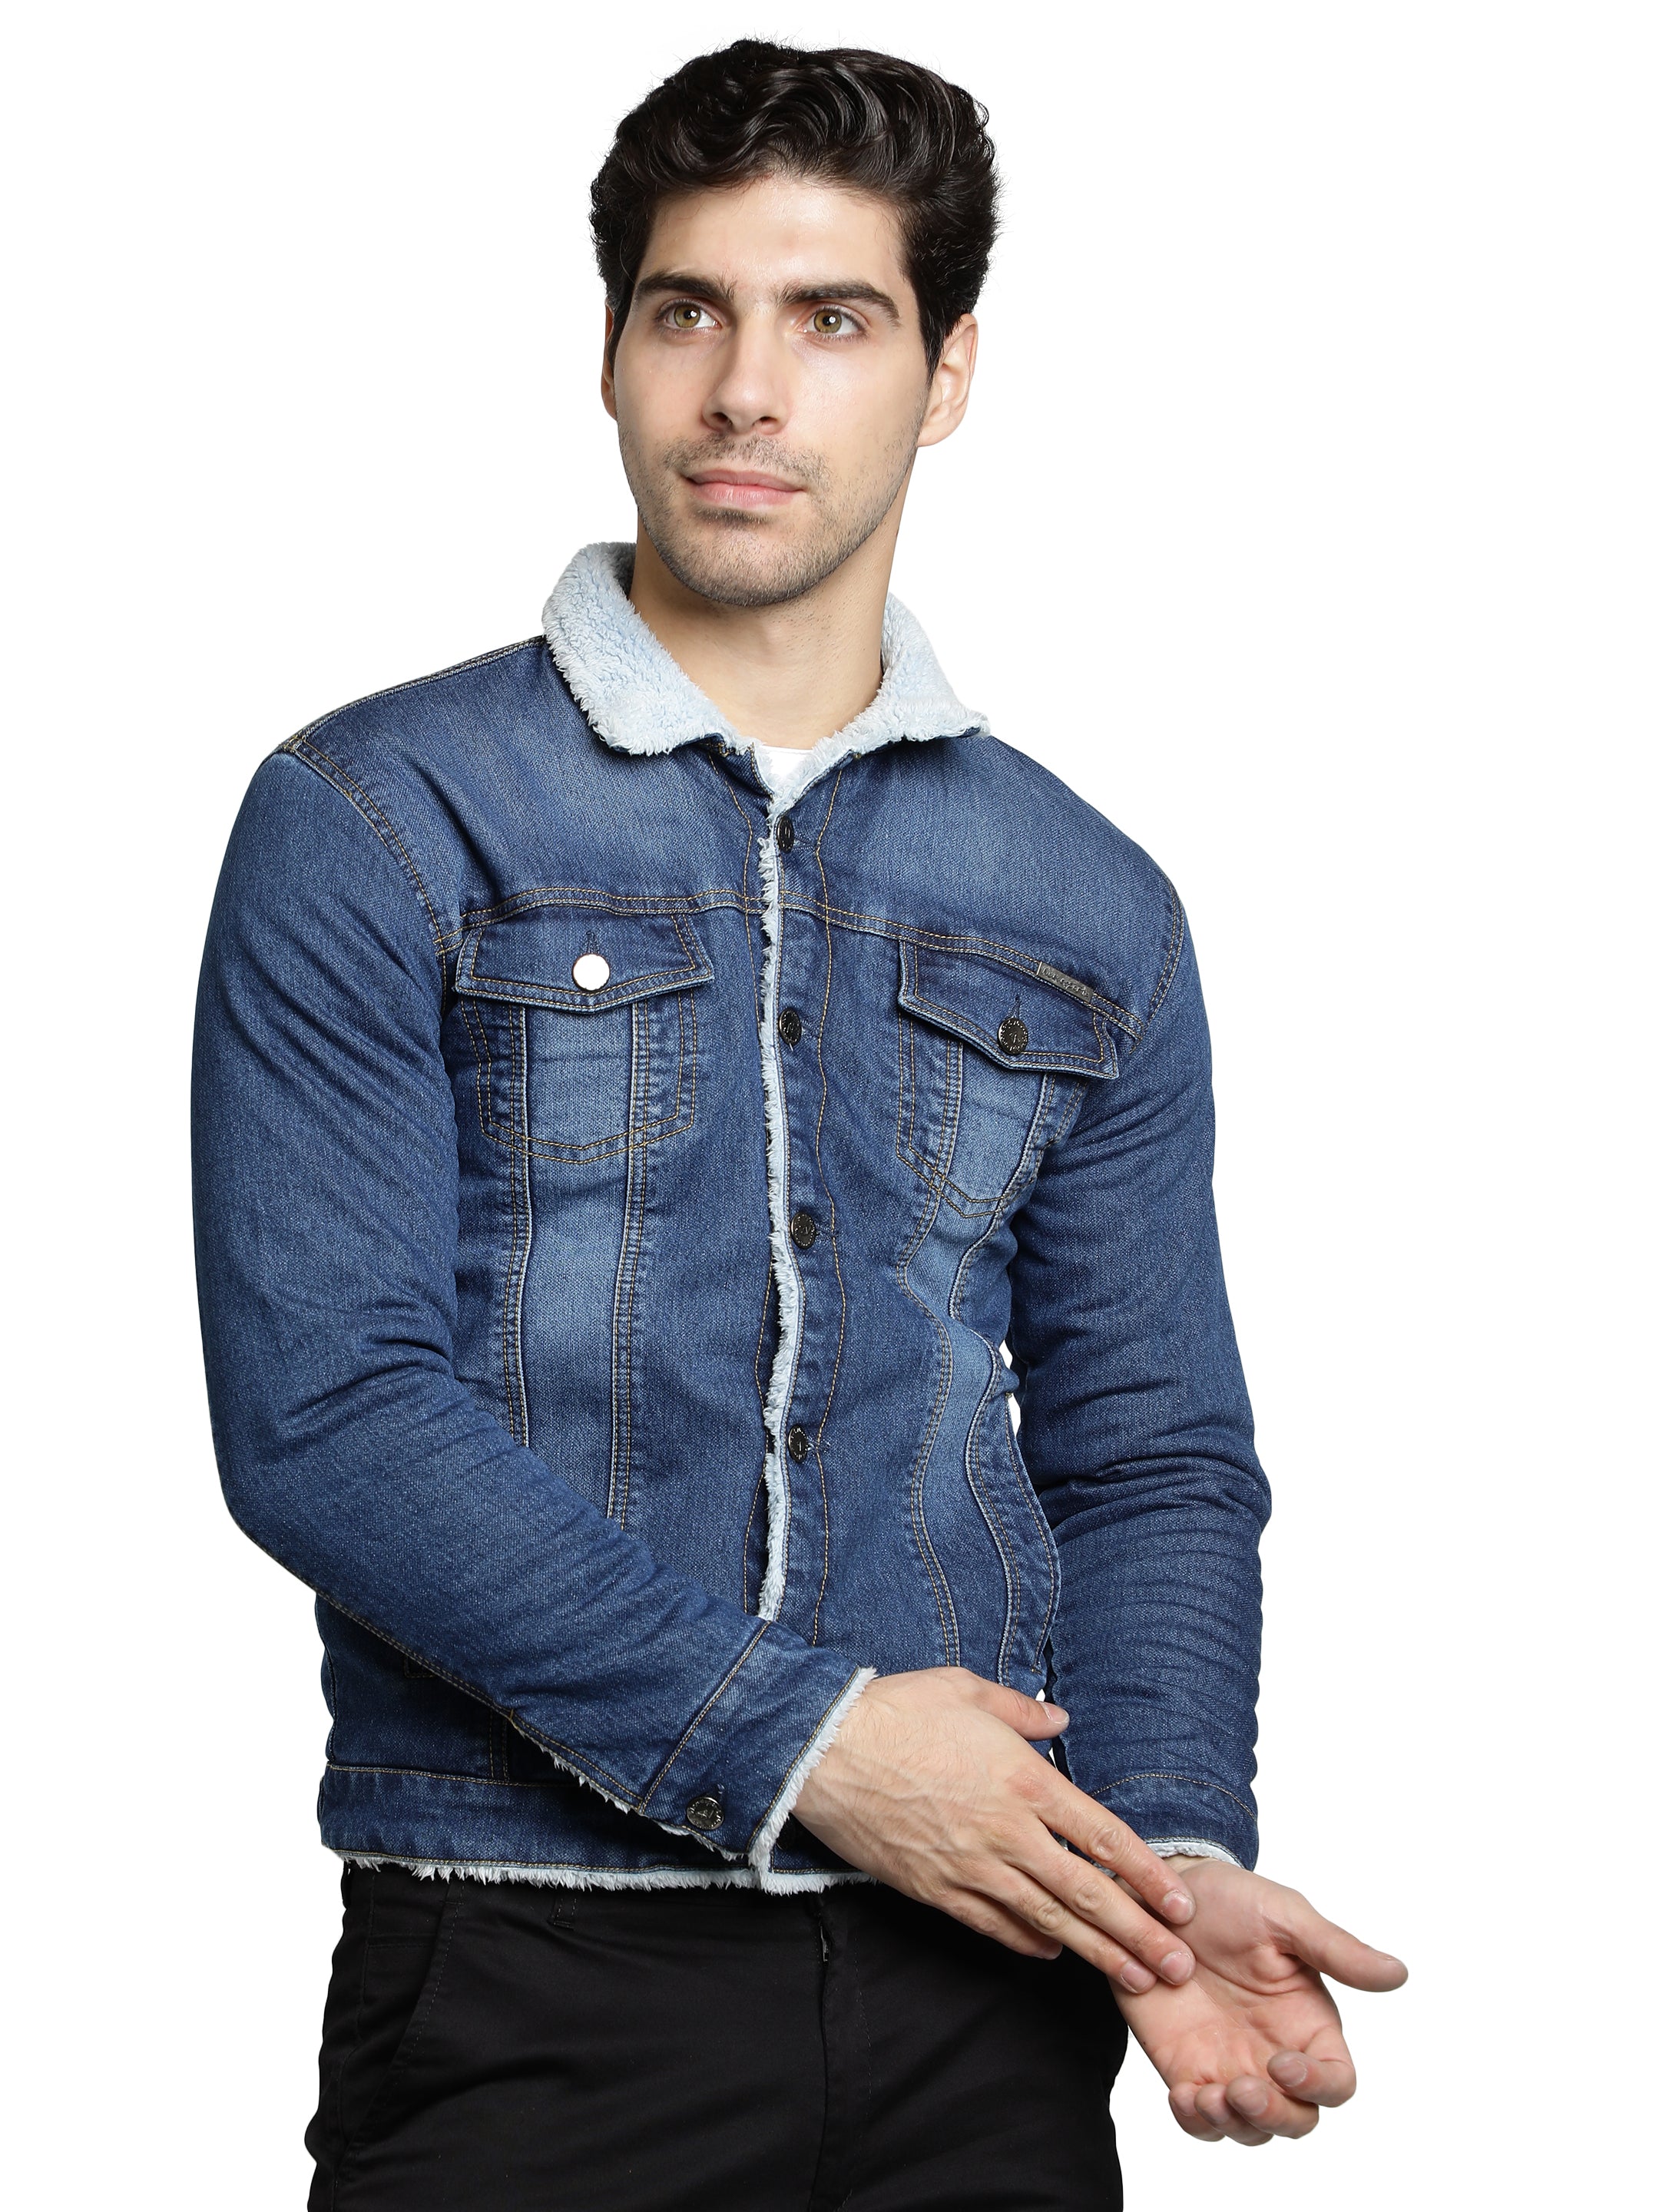 Men's Beige Solid Cotton Denim Jackets